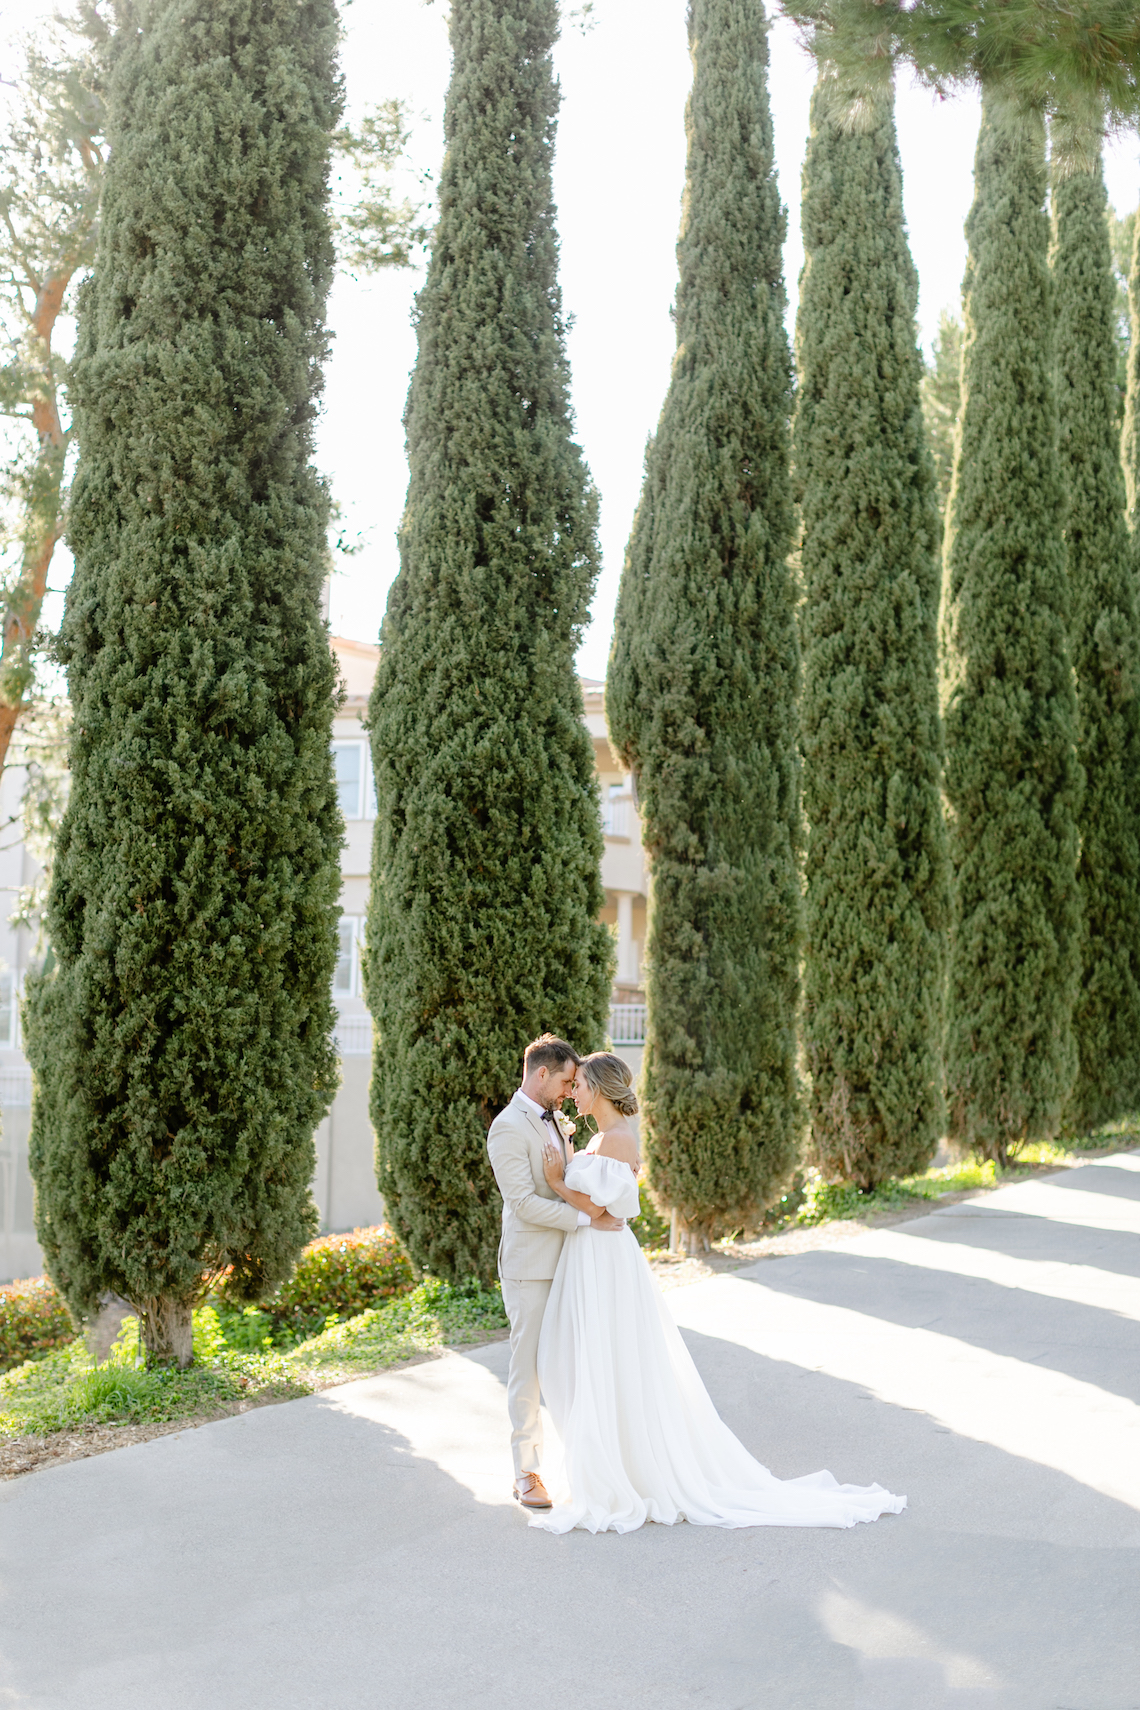 Té de la tarde del jardín inglés Inspiración para bodas - Fotografía de Lorin Kelly - Pajarita y ramo - Reflejos de boda 51